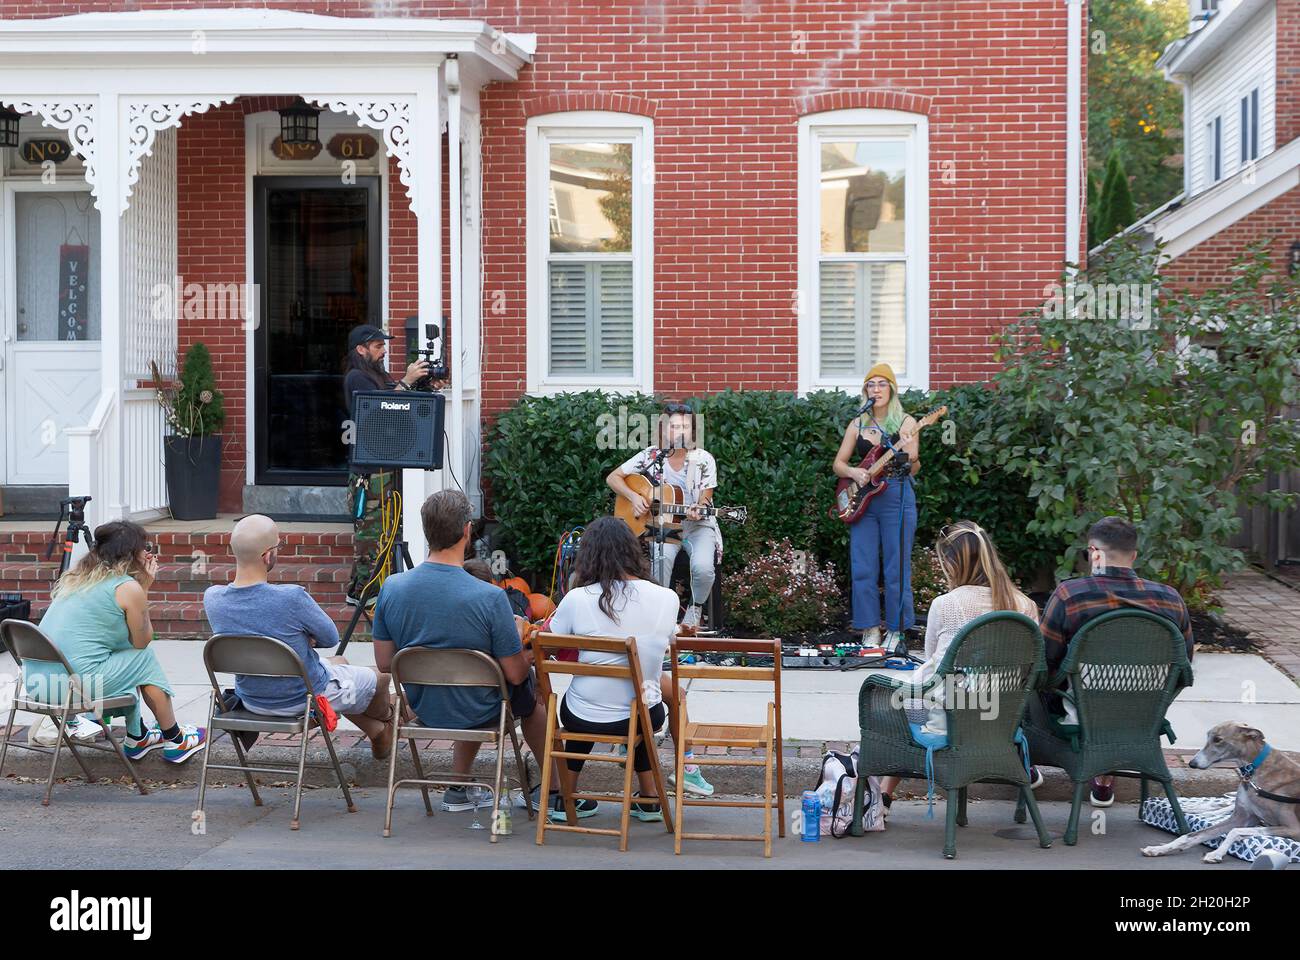 Porchfest, evento musical anual en Lambertville, Nueva Jersey, reúne a músicos y vecindarios locales compartiendo música en vivo y un sentido de comunidad. Foto de stock